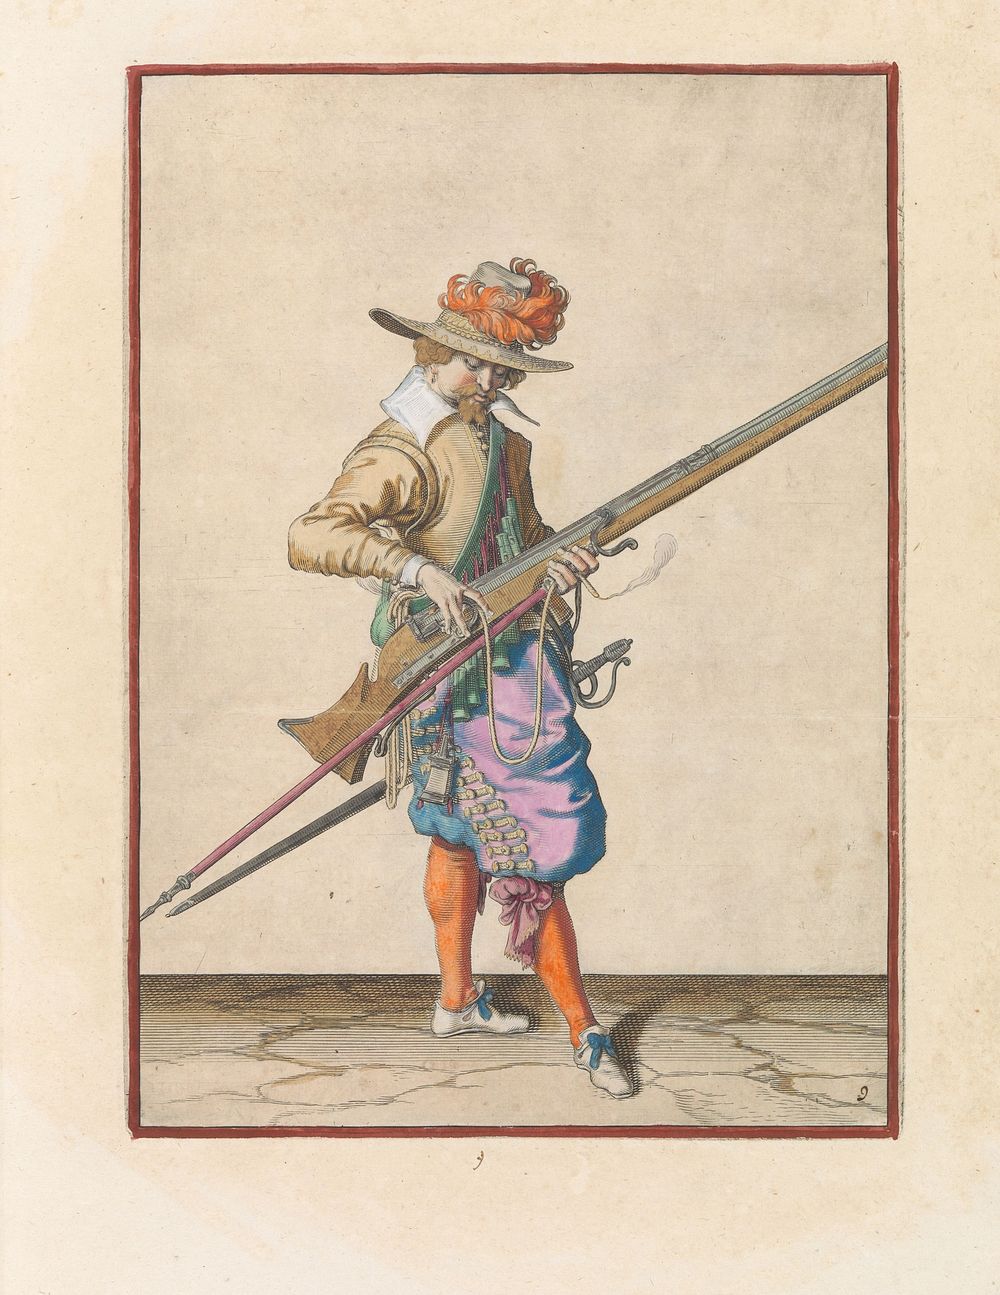 Soldaat die de lont op de haan van zijn musket de juiste plek en vorm geeft (c. 1597 - 1607) by Jacques de Gheyn II and…